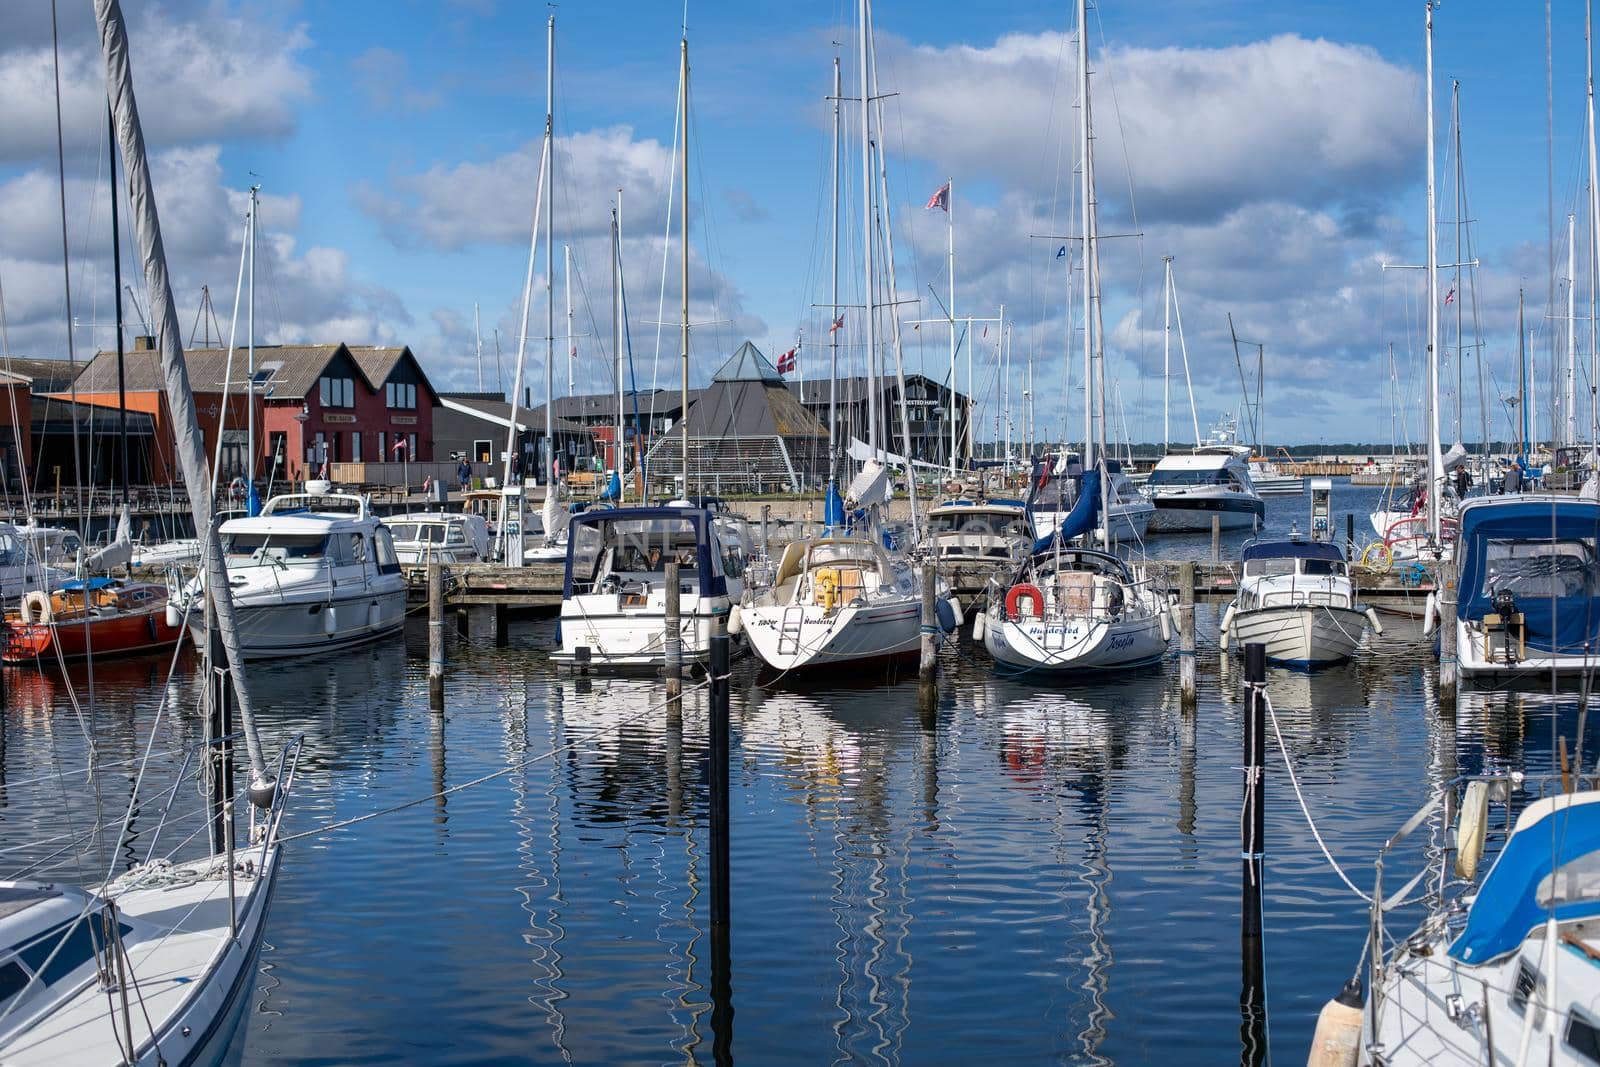 Sailboat Harbour in Hundested, Denmark by oliverfoerstner